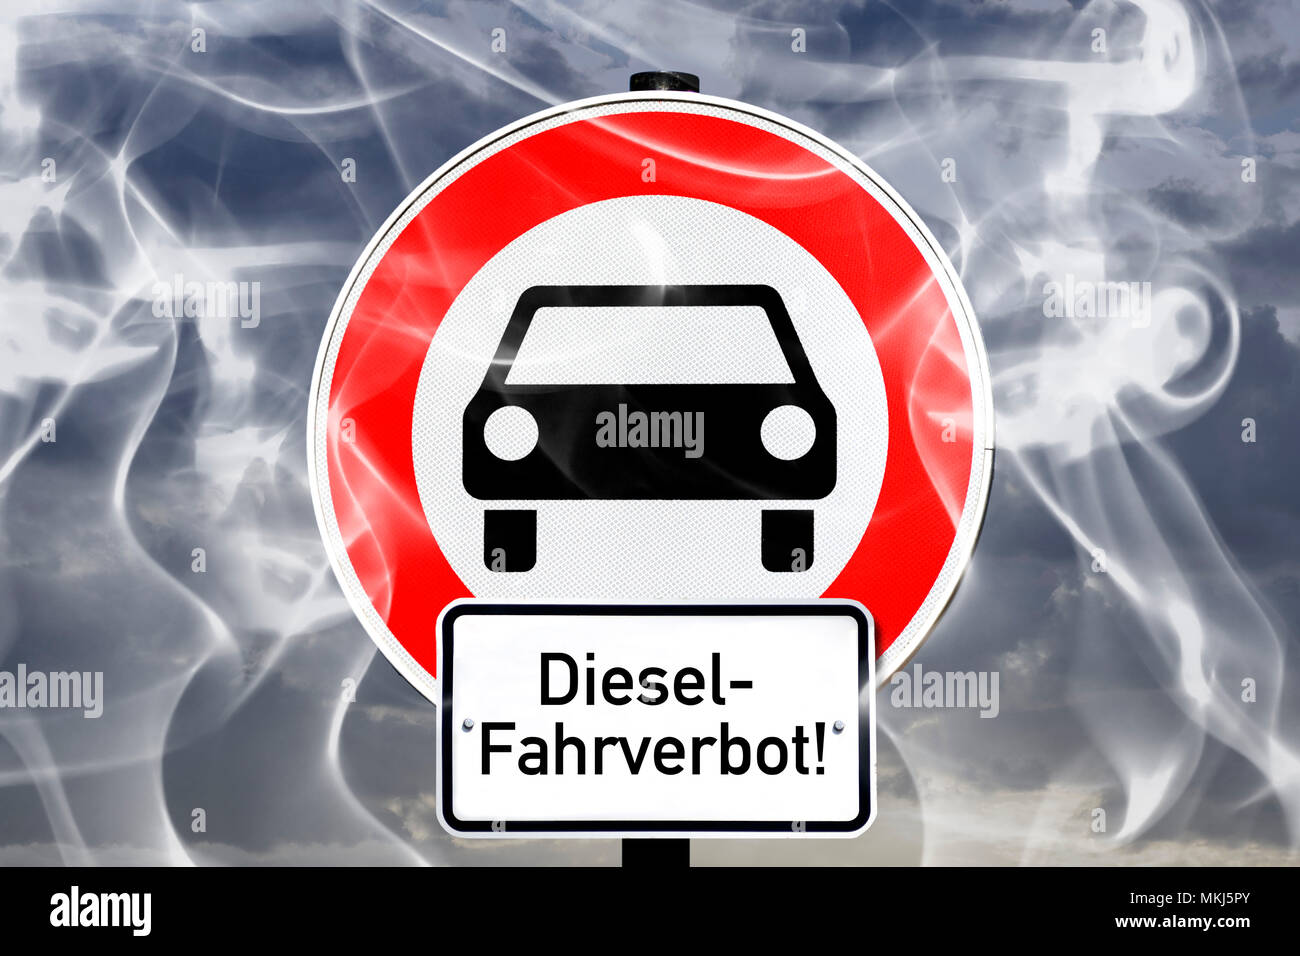 Kfz-Durchfahrtsverbotschild in car exhaust gases, diesel driving ban, Kfz-Durchfahrtsverbotschild in Autoabgasen, Diesel-Fahrverbot Stock Photo